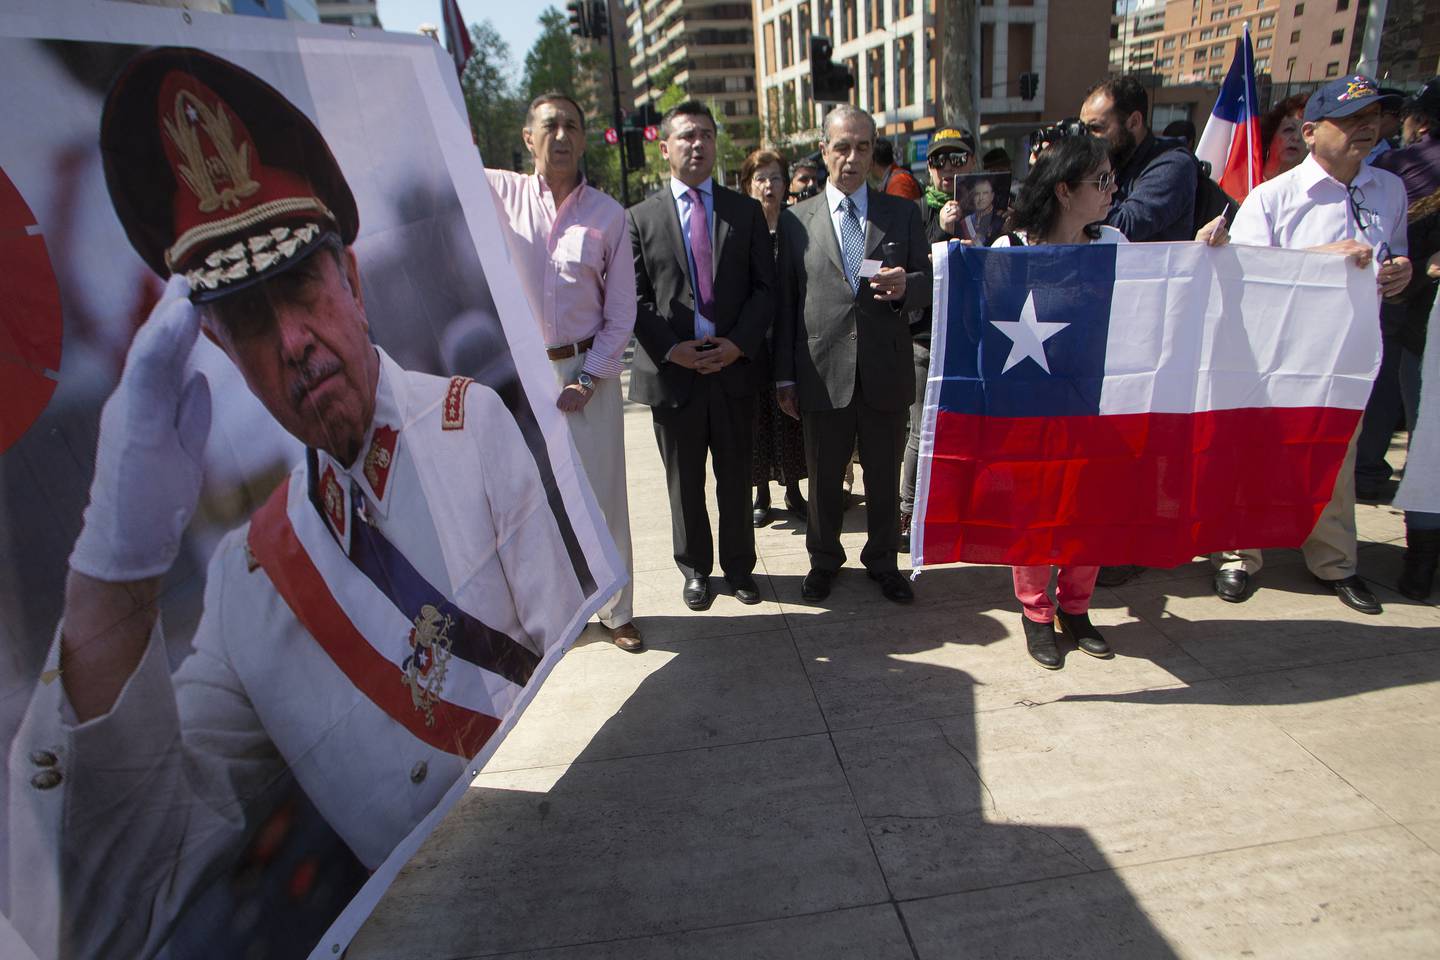 Partidarios del dictador chileno Augusto Pinochet (1915-2006) con una pancarta que lo representa, se manifiestan en el 30 aniversario del plebiscito que puso fin a su gobierno (1973-1990) en Santiago el 5 de octubre de 2018.